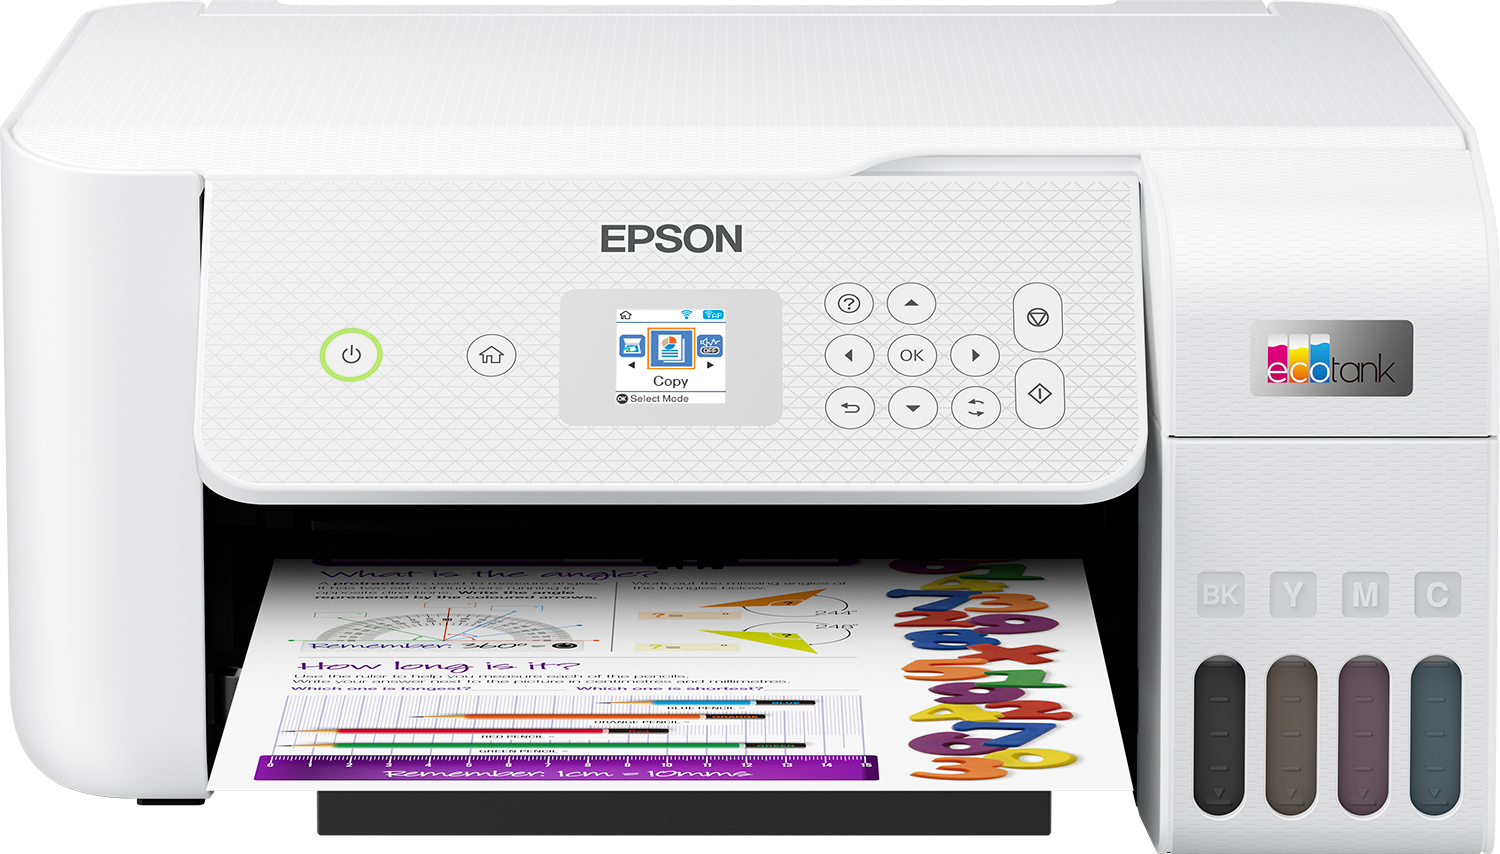 Promo : commandez une imprimante Epson et recevez un remboursement